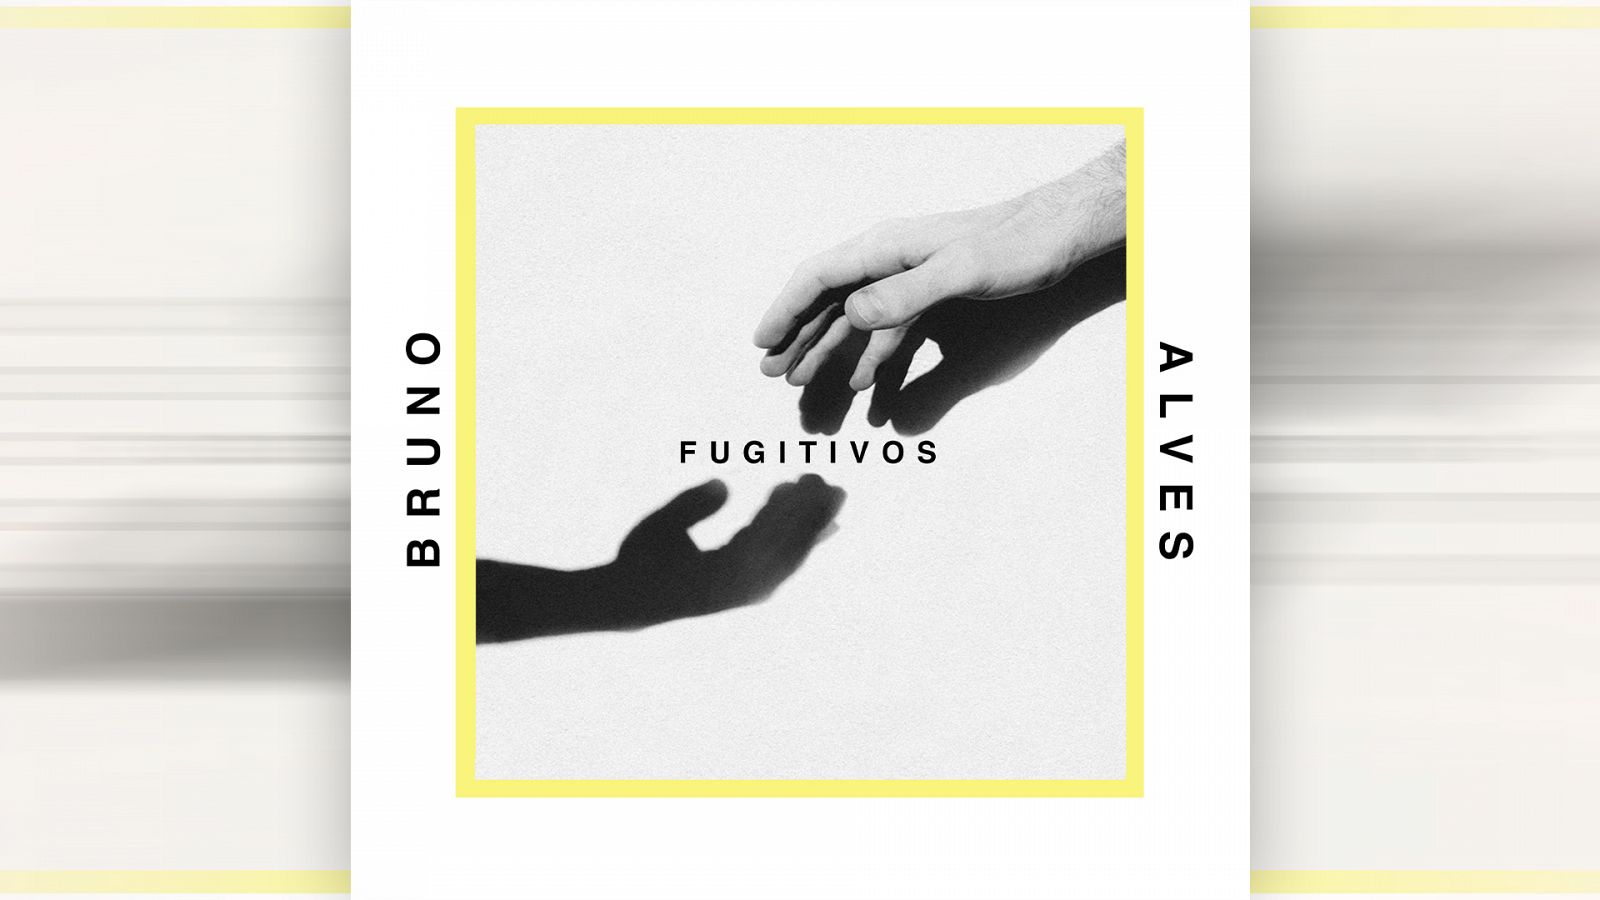 Portada de "Fugitivos", primer single de Bruno